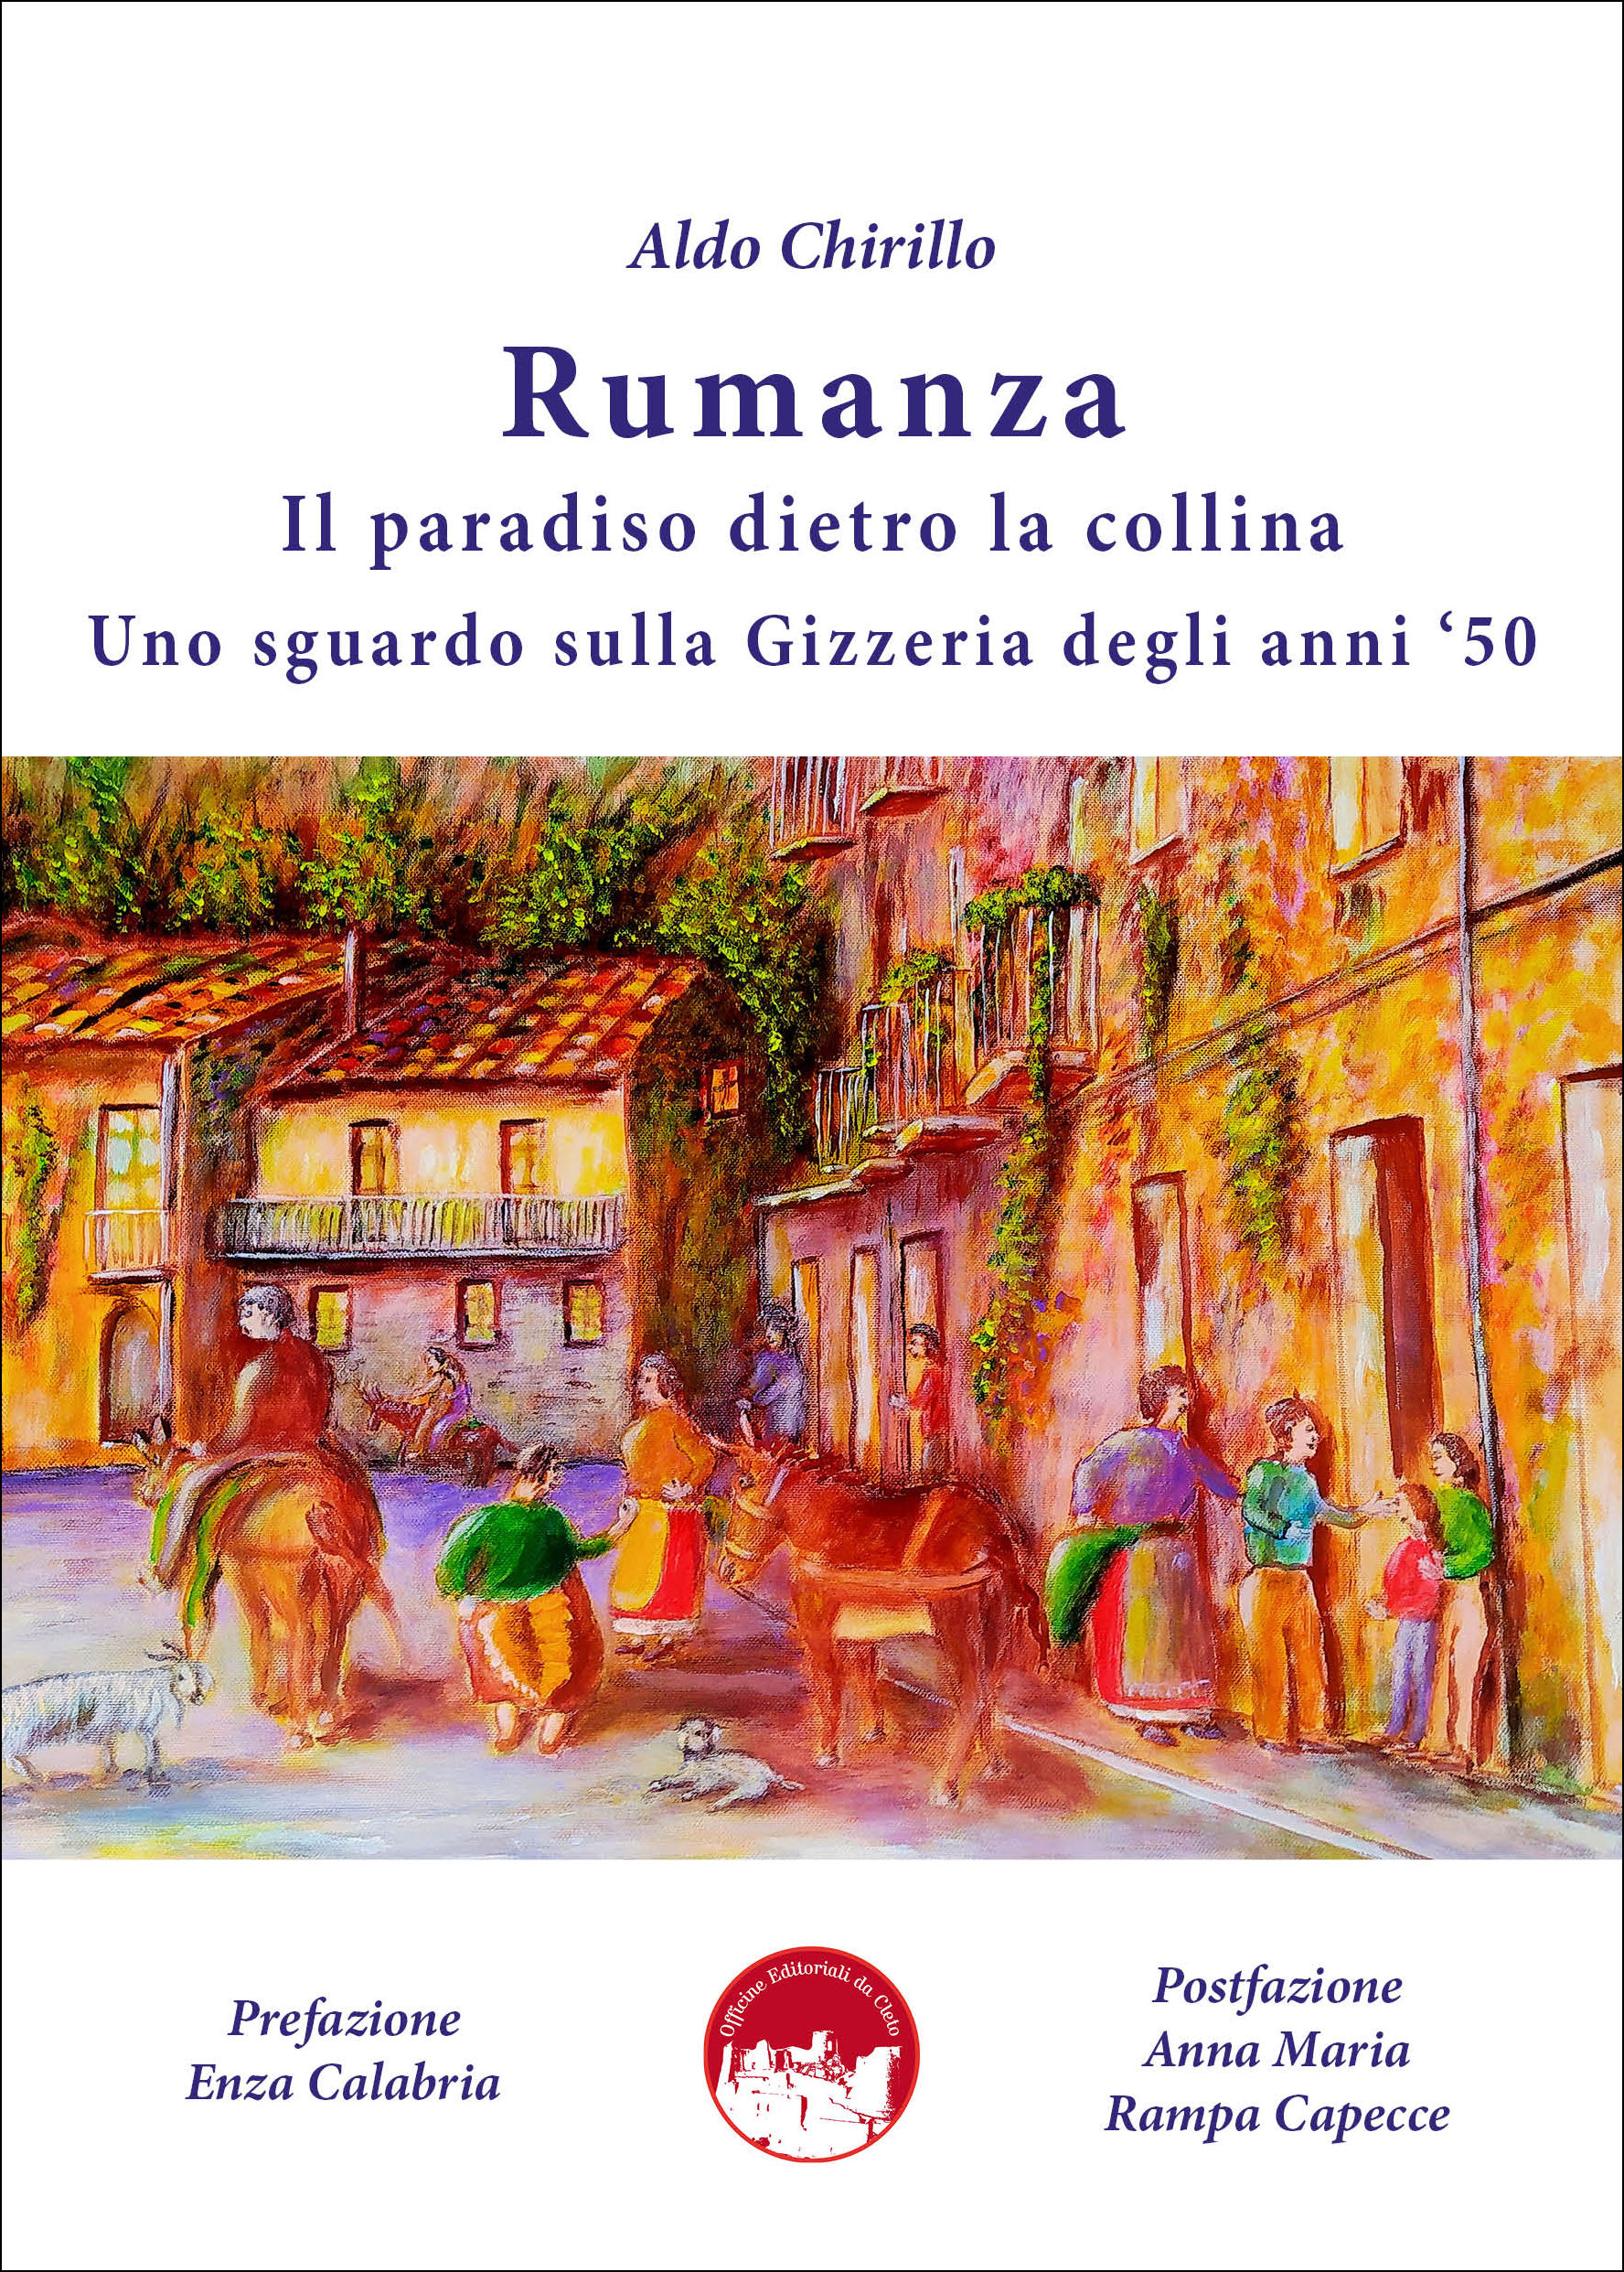 La copertina del libro dal titolo Rumanza, di Aldo Chirillo